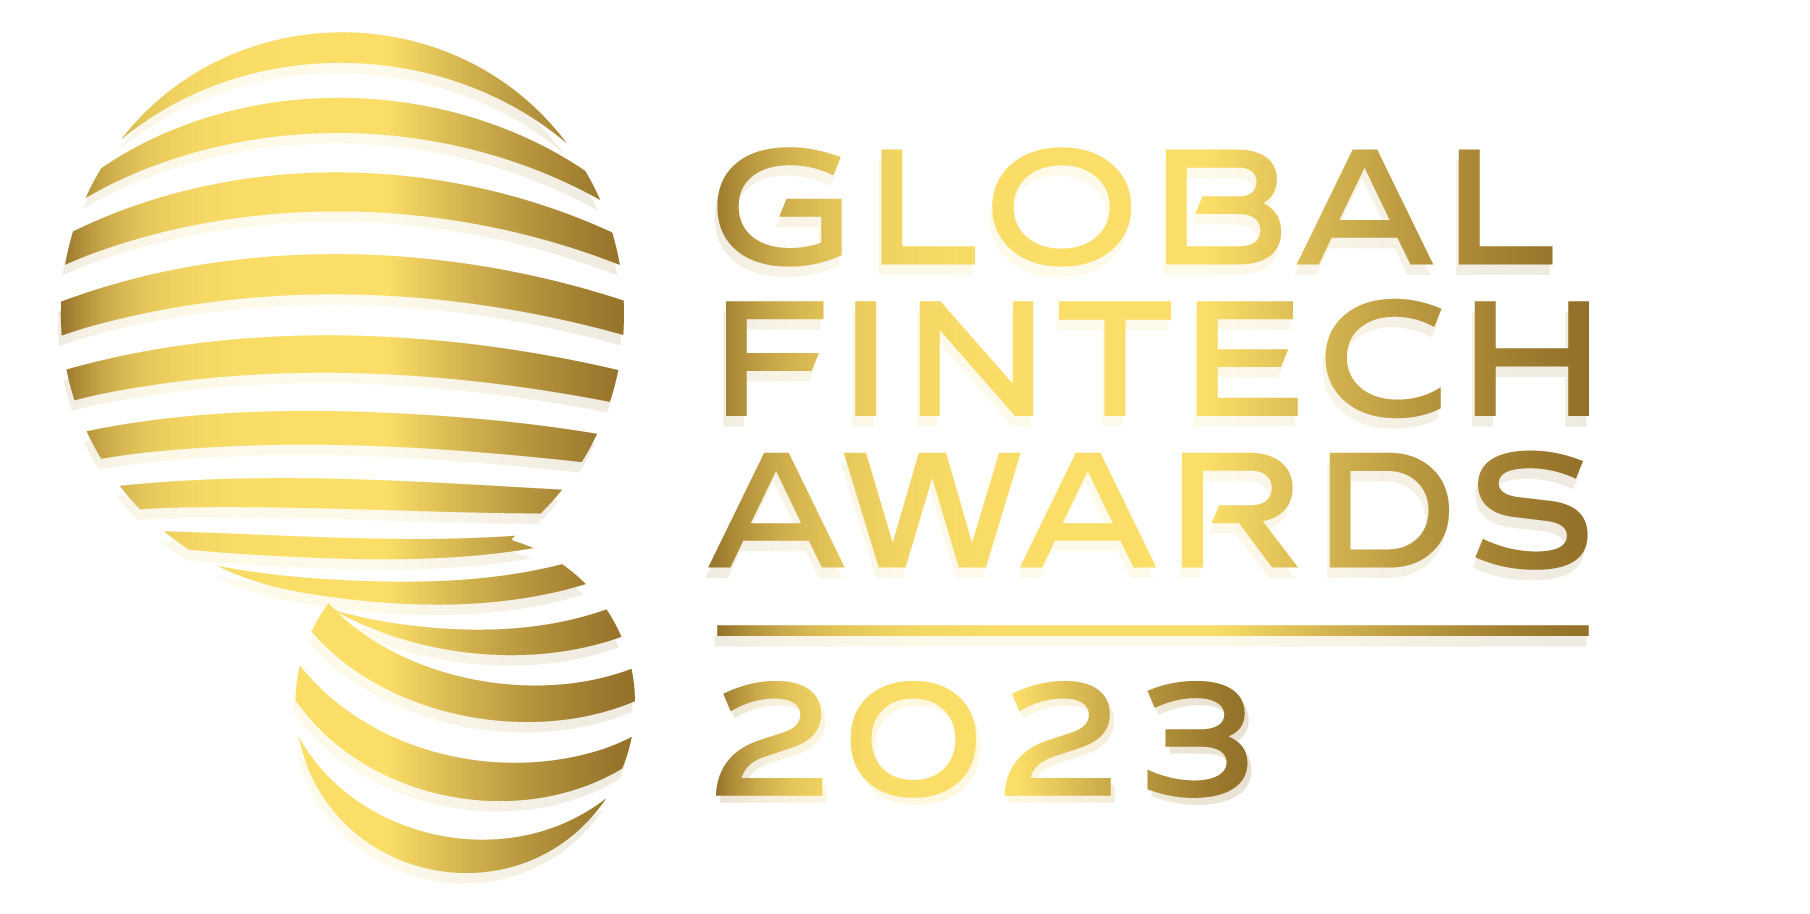 Global Fintech Awards 2023